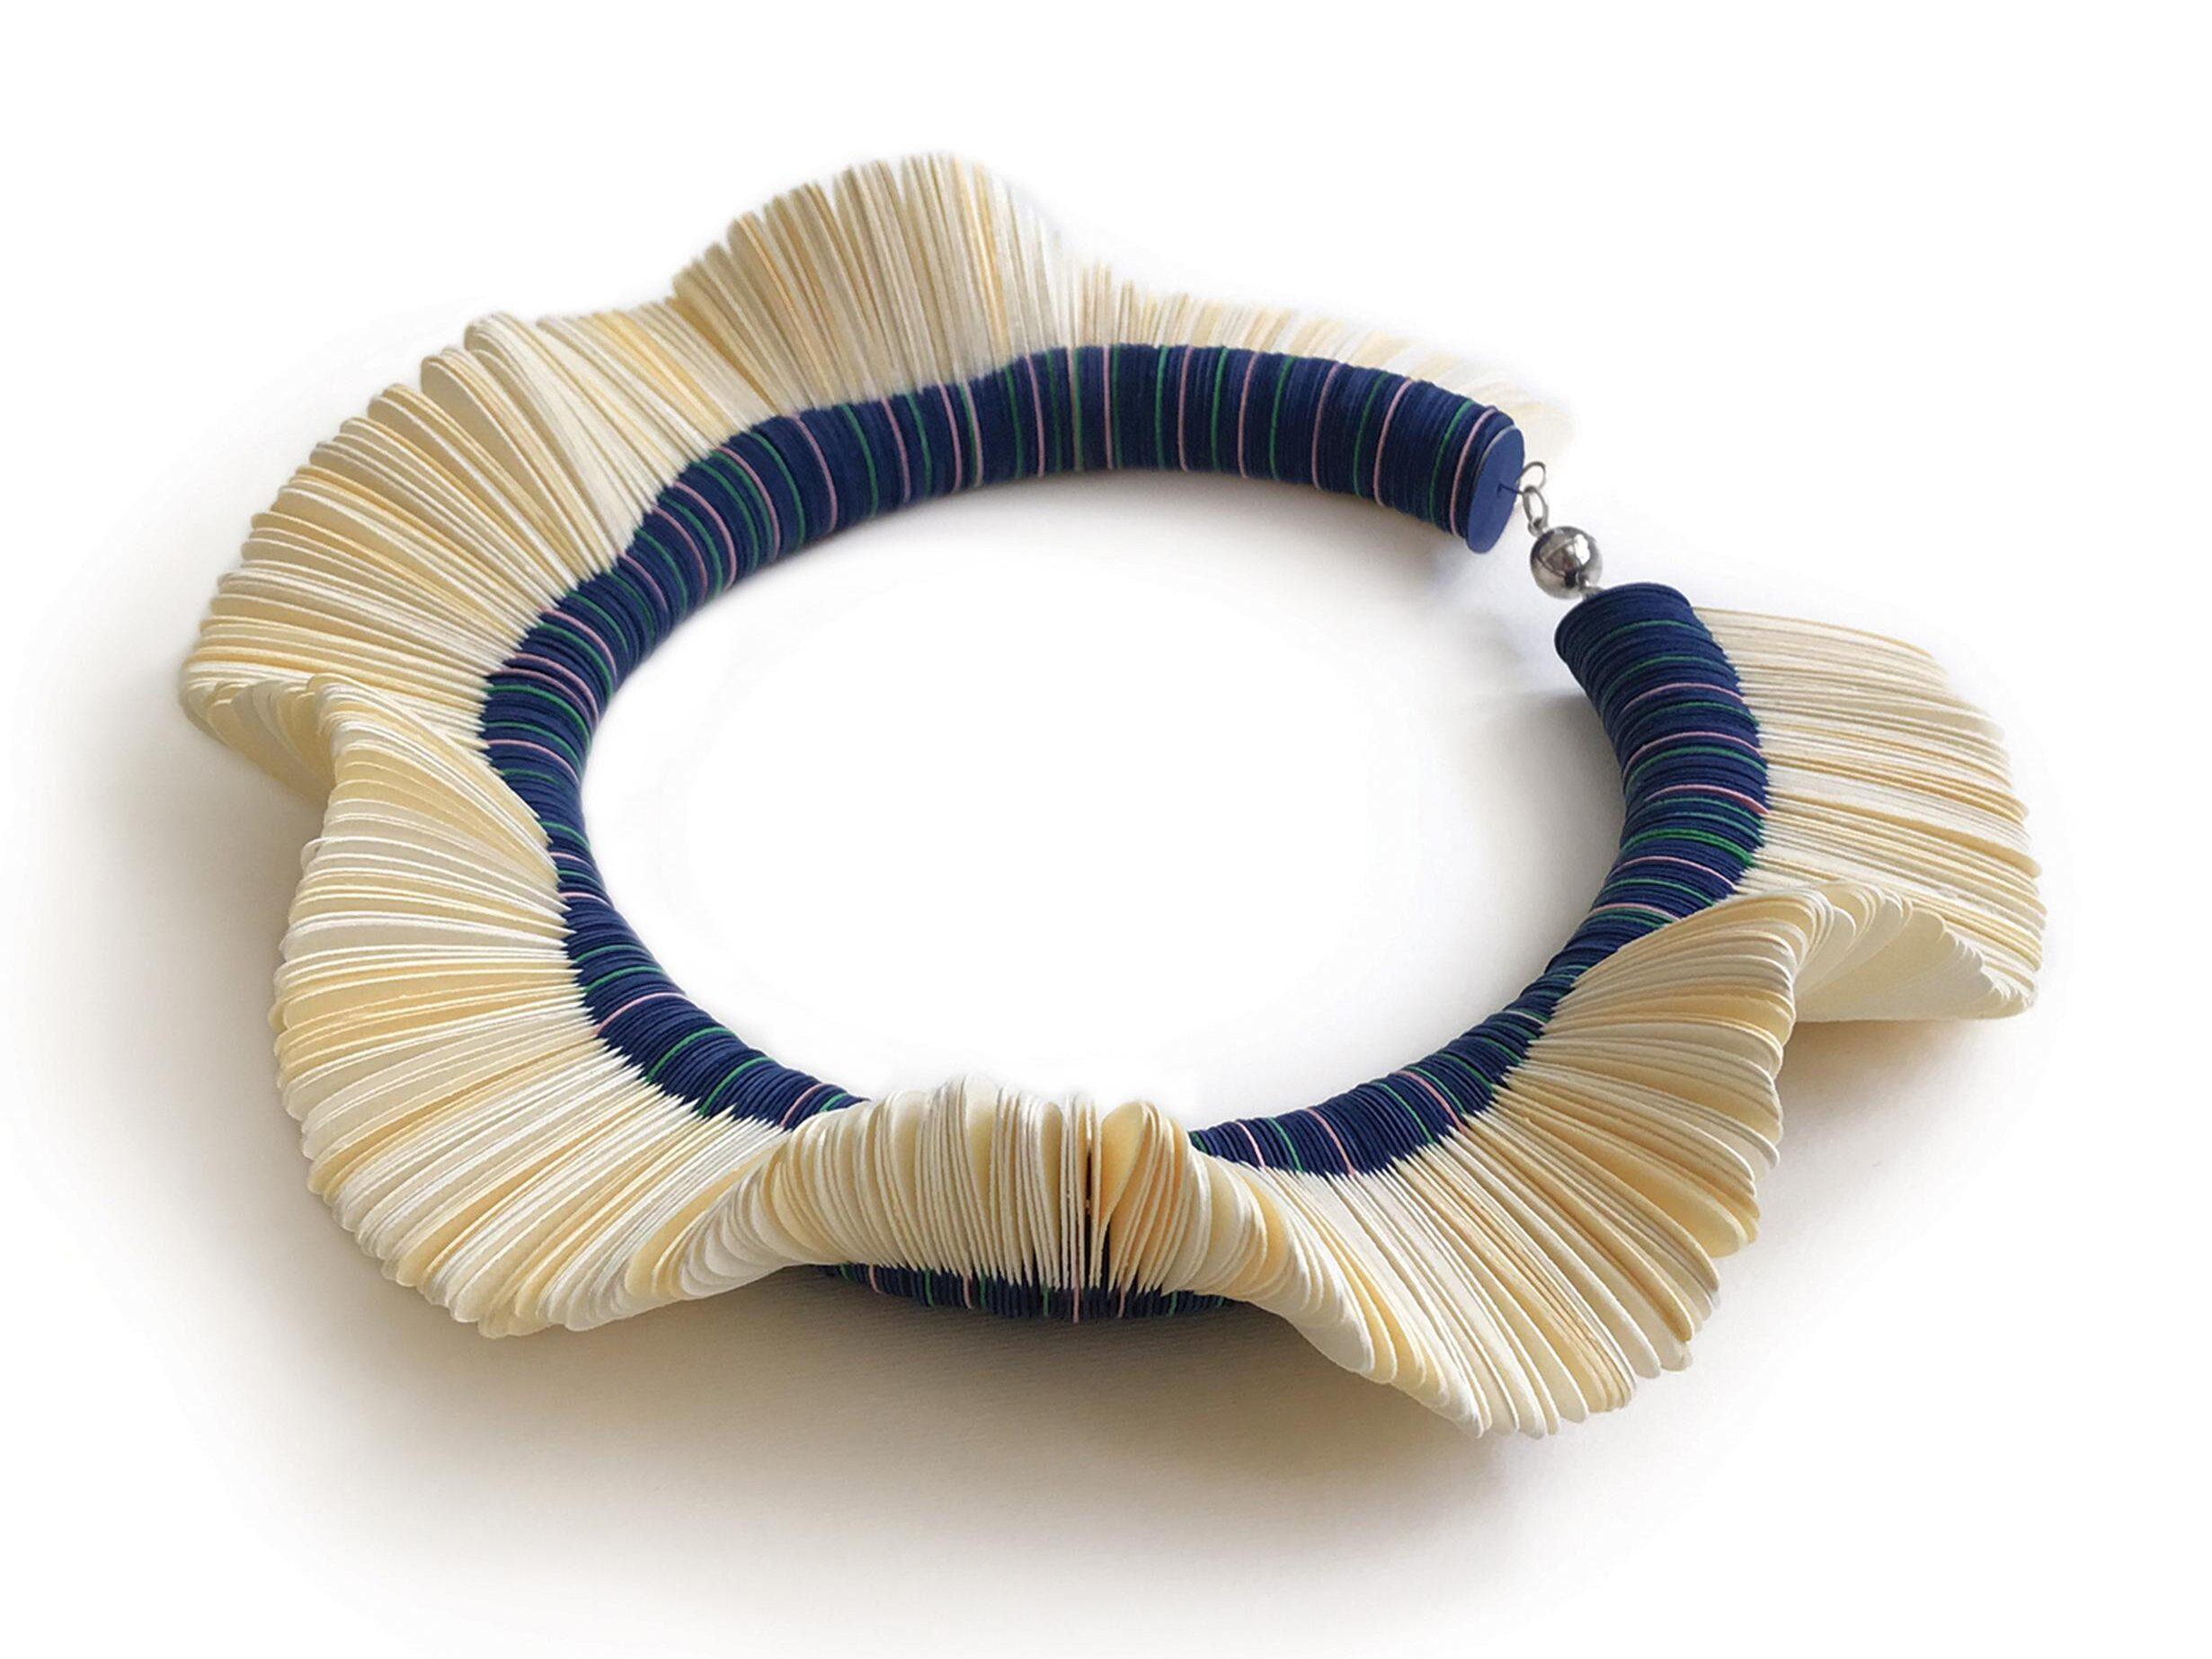 gioiello di carta, collana girocollo a forma di margherita composta da petali bianchi modellati ad onda